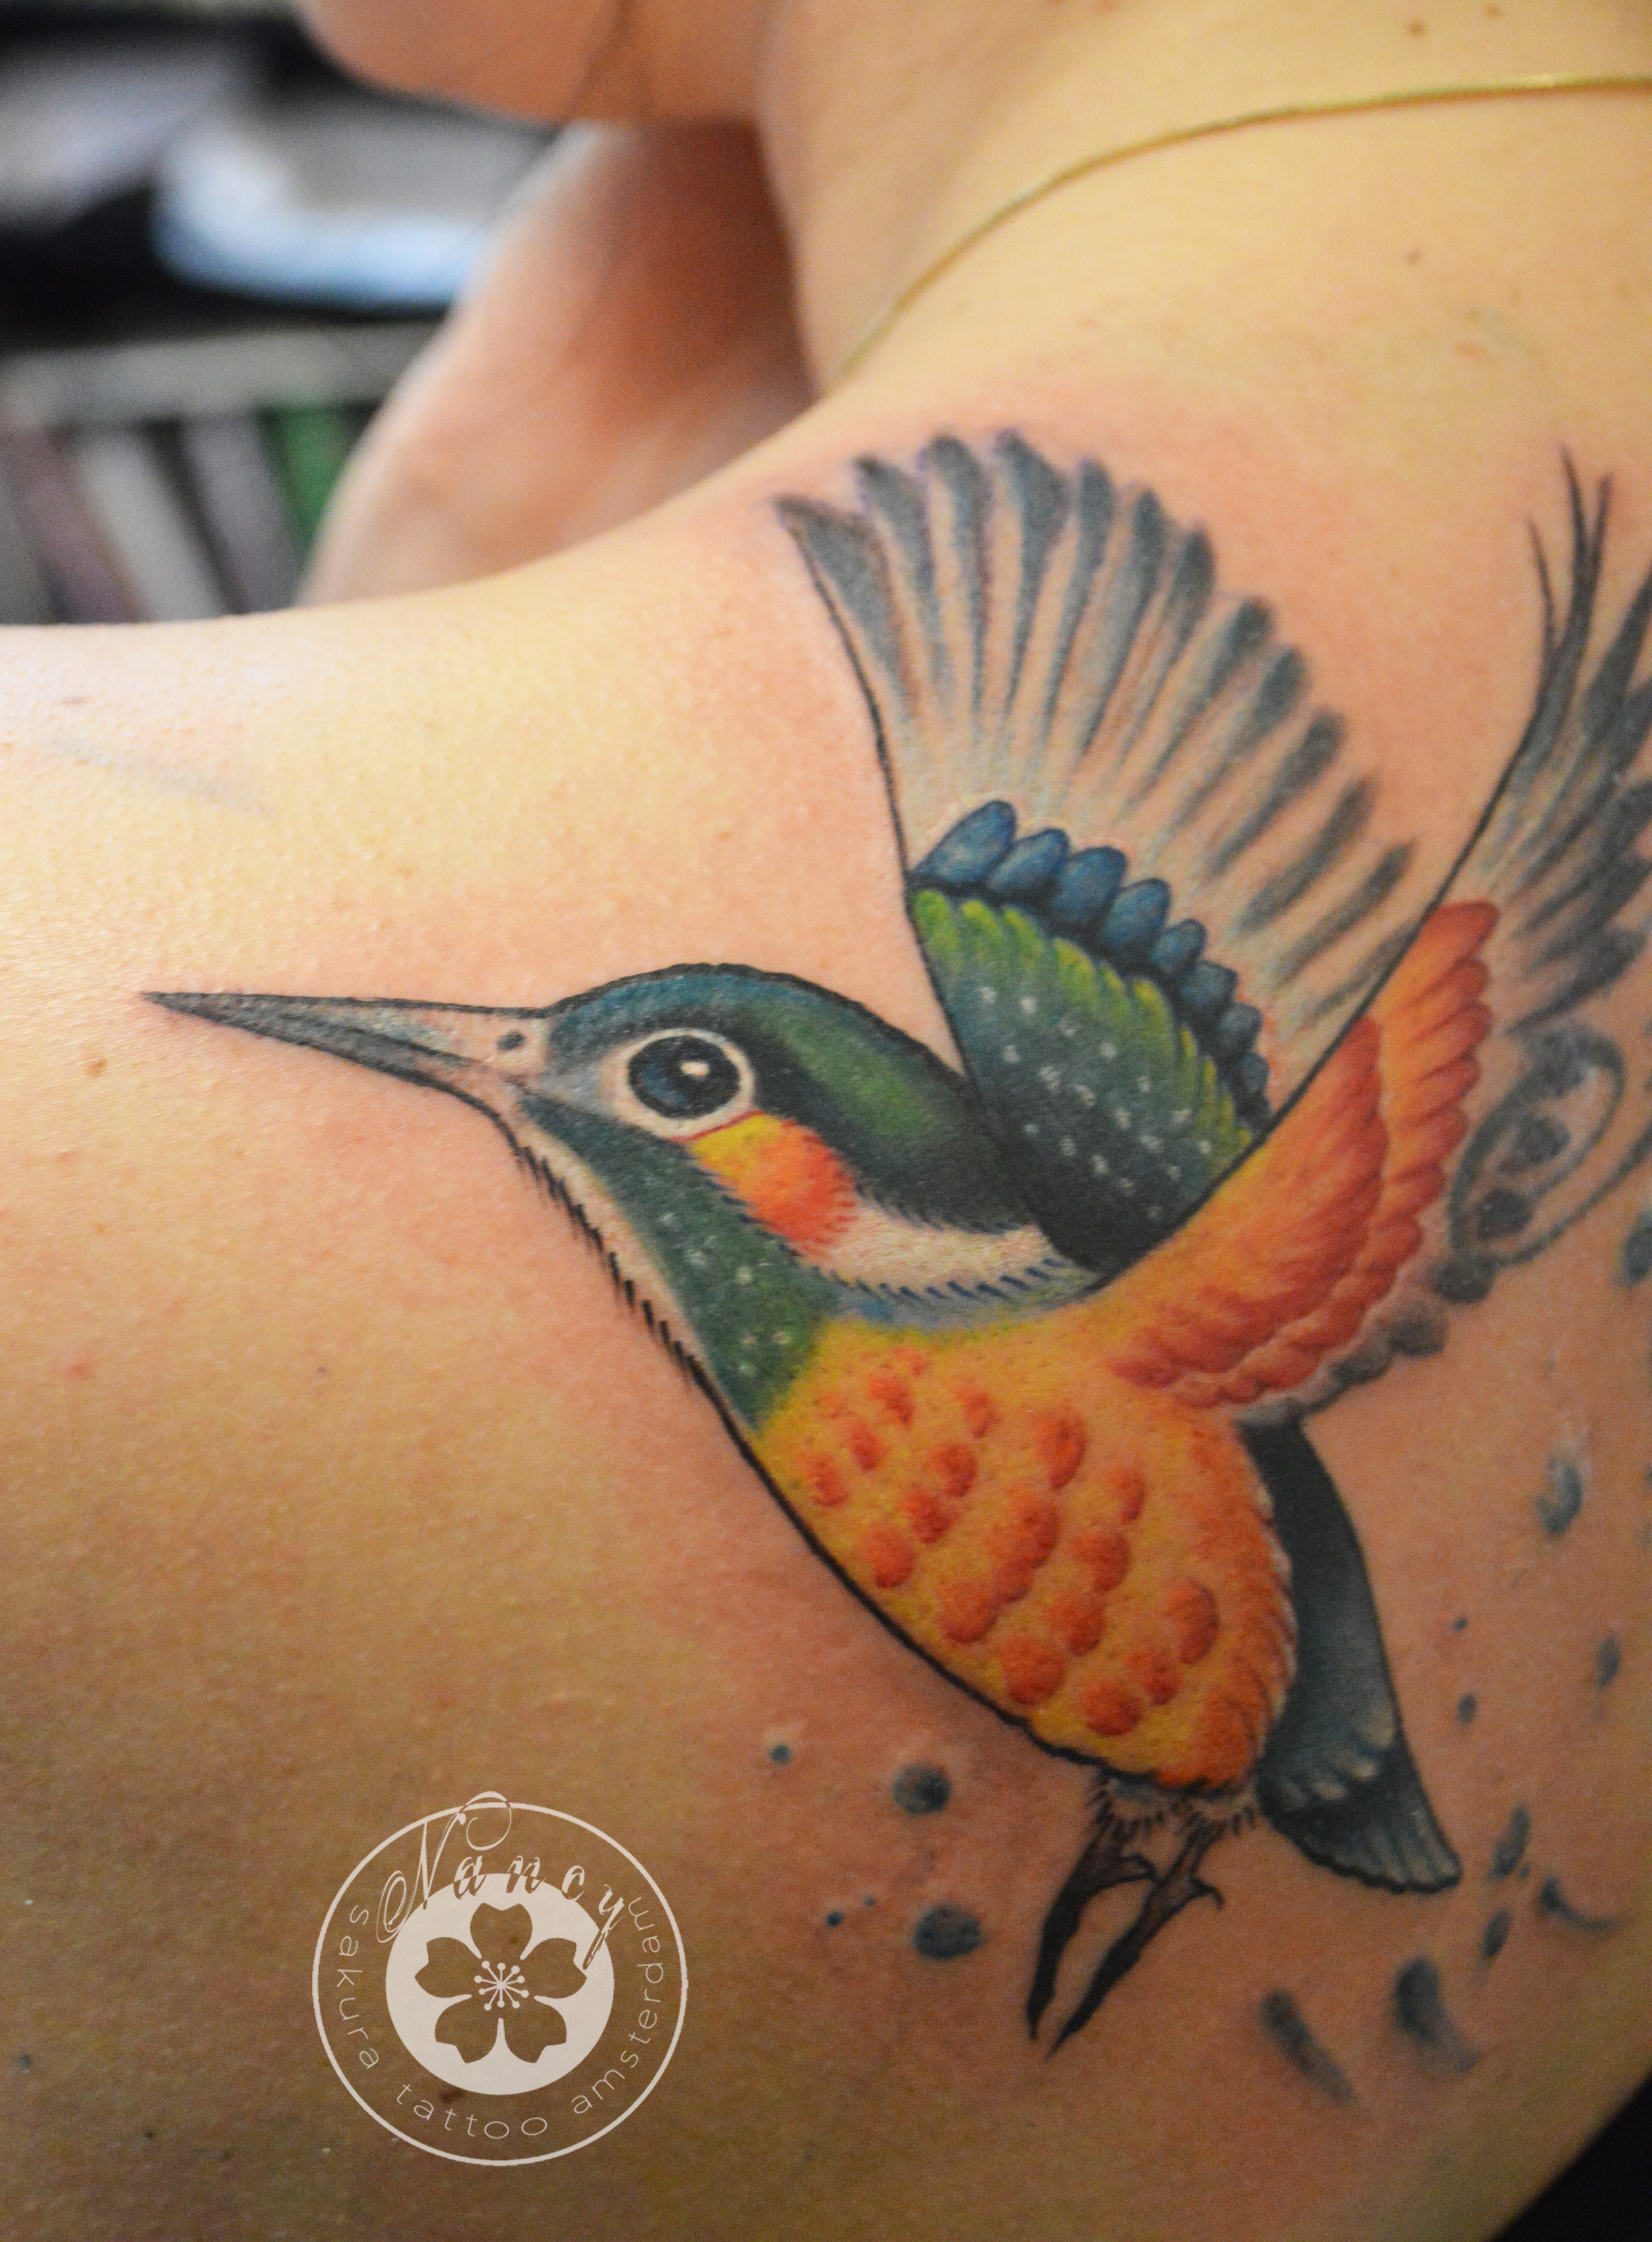 Cosmic bird tattoo by David Côté - Tattoogrid.net